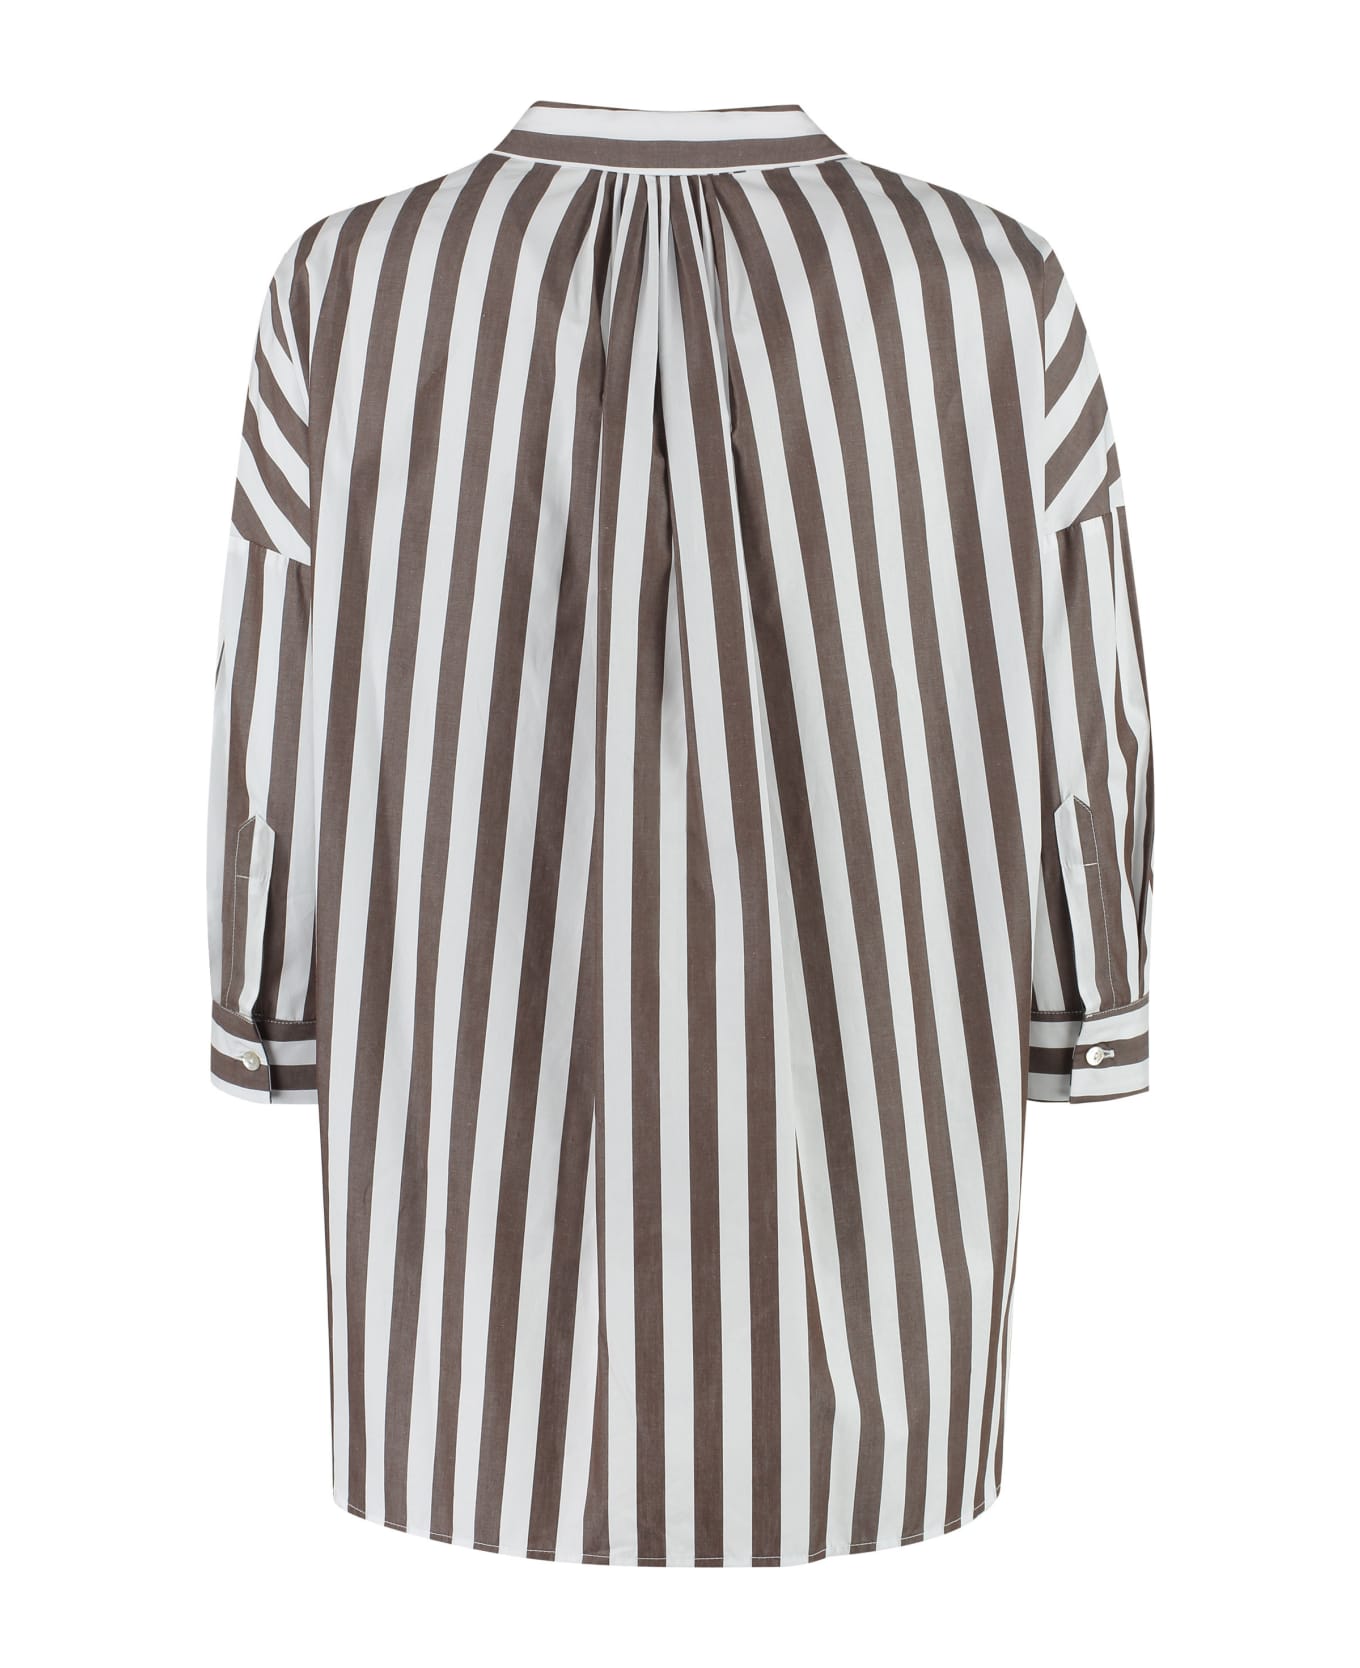 Barba Napoli Striped Cotton Shirt - Multicolor シャツ